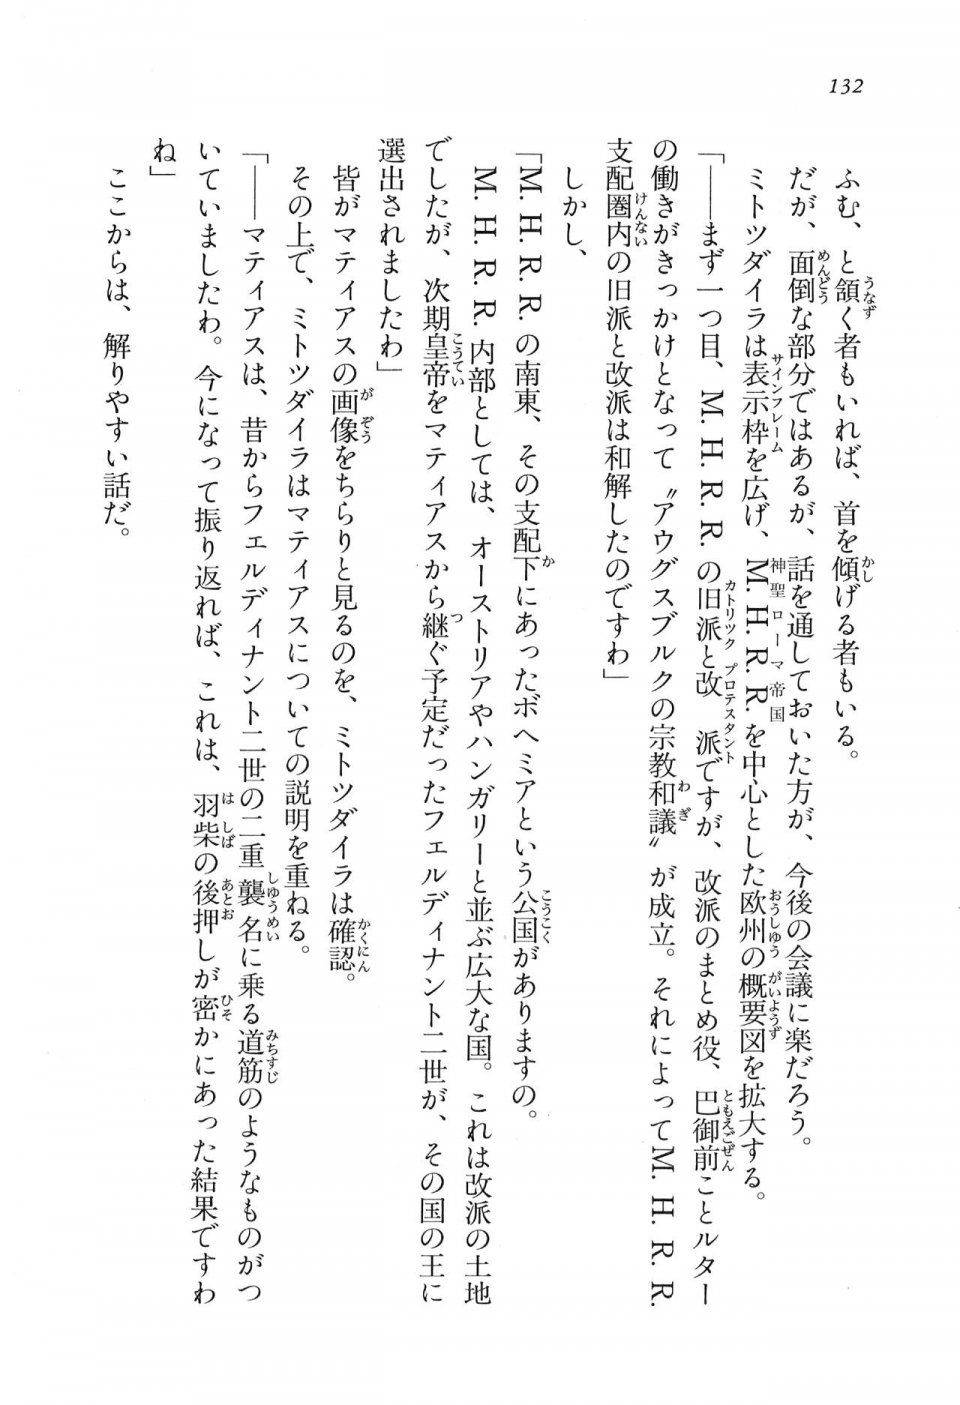 Kyoukai Senjou no Horizon LN Vol 16(7A) - Photo #132